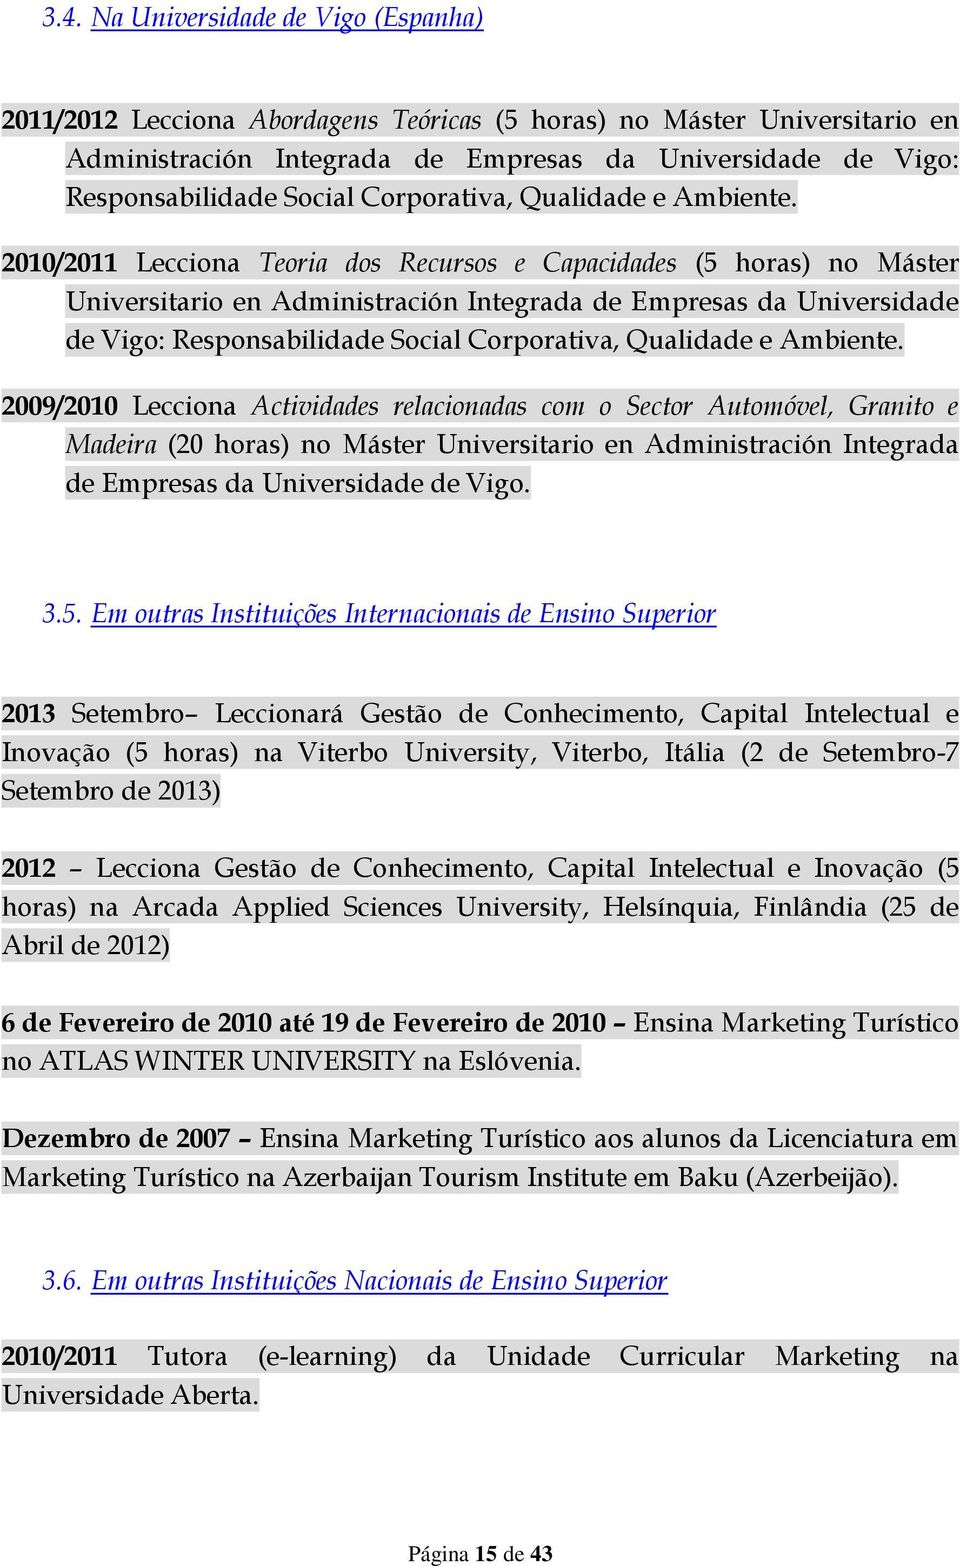 2010/2011 Lecciona Teoria dos Recursos e Capacidades (5 horas) no Máster Universitario en Administración Integrada de Empresas da Universidade de Vigo: Responsabilidade  2009/2010 Lecciona